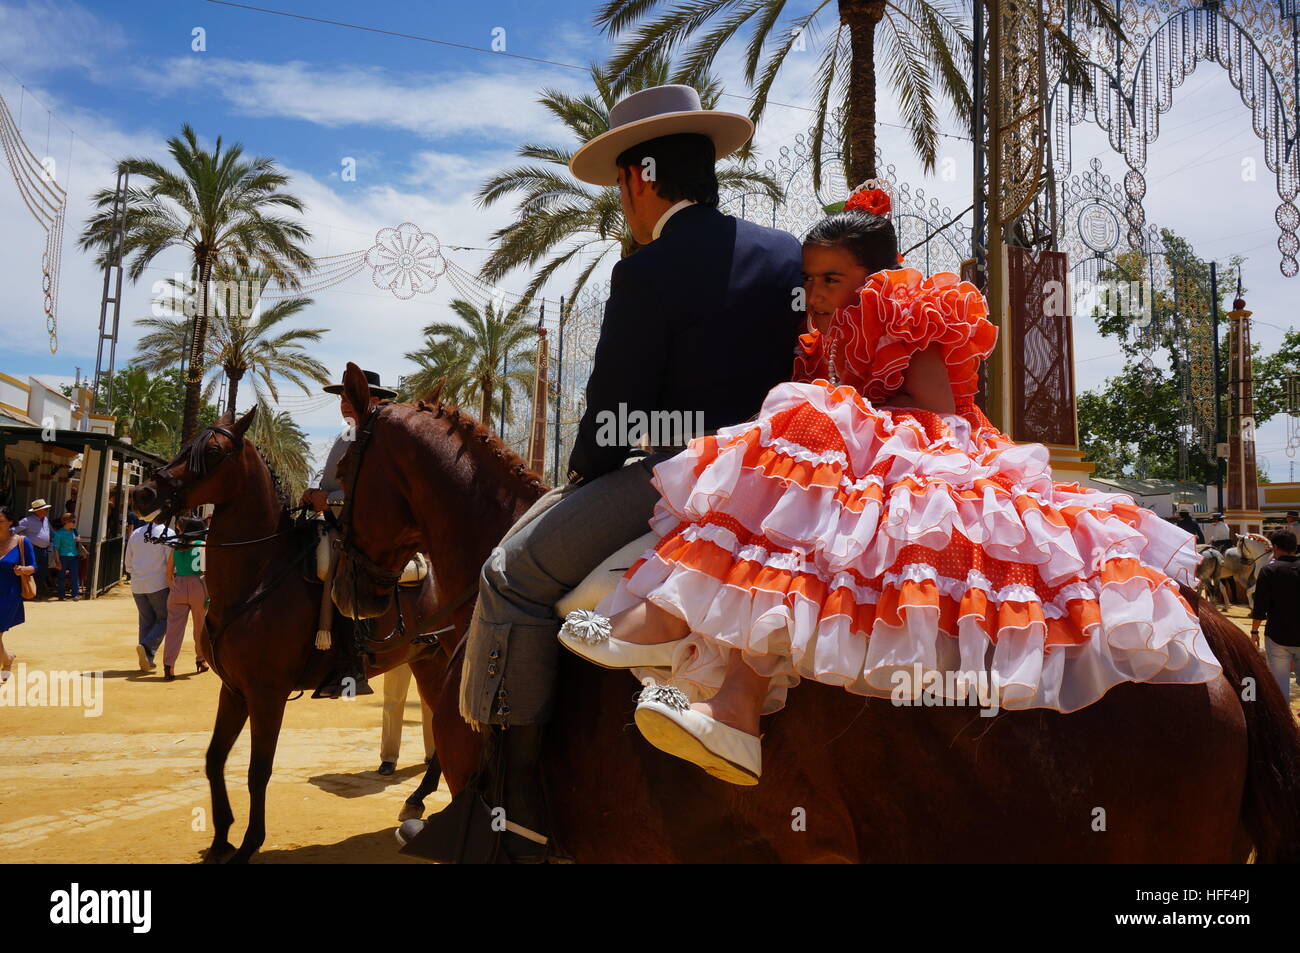 Andalusischen Frauen während der Feria in Jerez - 05.11.2013 - Spanien / Andalusien / Jerez De La Frontera - Frauen in der andalusischen Kultur, Feria in Jerez De La Frontera.Situation der Feria, Frauen in traditioneller Kleidung. Frauen haben eine wichtige Rolle bei der Vertretung der andalusischen Kultur während der Ferias. Ein besonderer Tag ist sie sogar gewidmet. Durch ihre bunten Outfits und Accessoires, das Flamencotanzen und singen können sie in einer machistischen Gesellschaft, Anmut, Charme, Freude und Stärke der andalusischen Traditionen verkörpern.    -Sandrine Huet / Le Pictorium Stockfoto